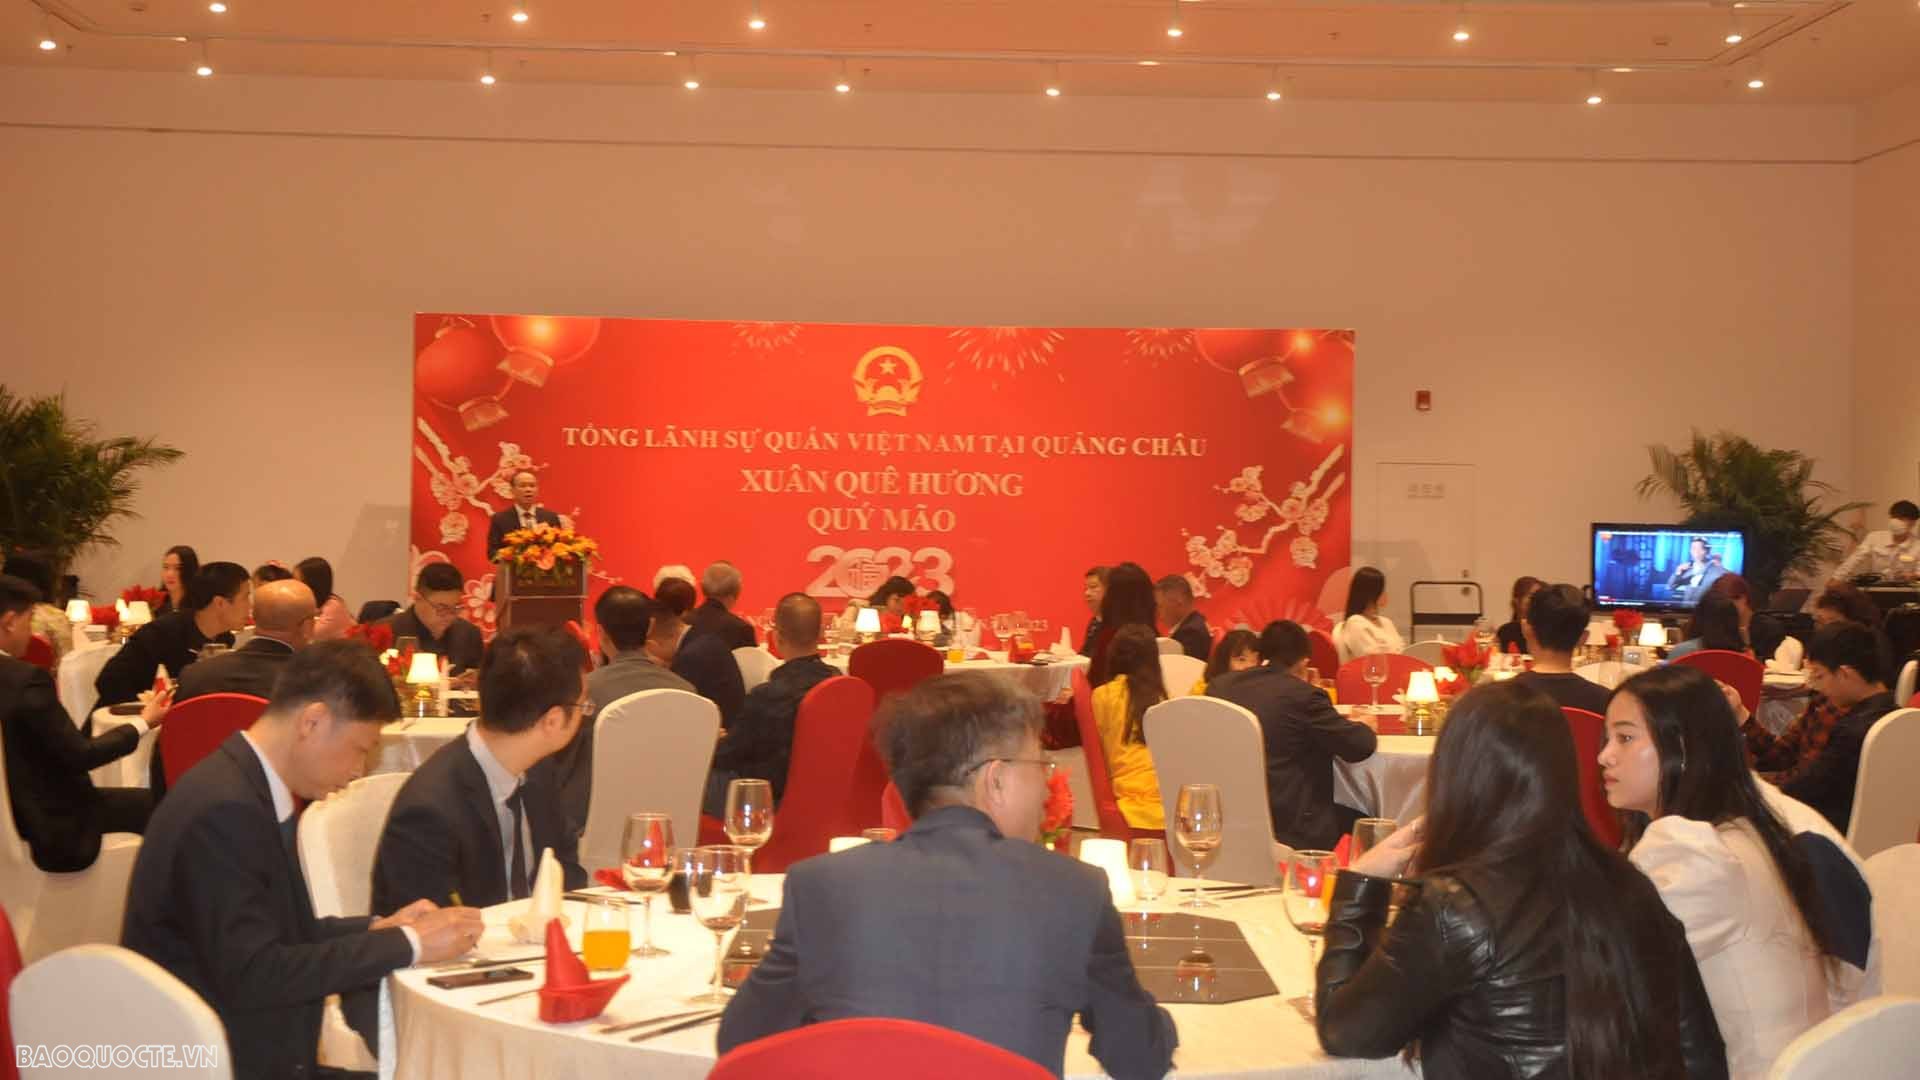 Tham dự chức buổi gặp mặt có đông đảo đại diện các doanh nghiệp cùng nhiều bà con cộng đồng người Việt đang sinh sống làm ăn tại Quảng Đông.